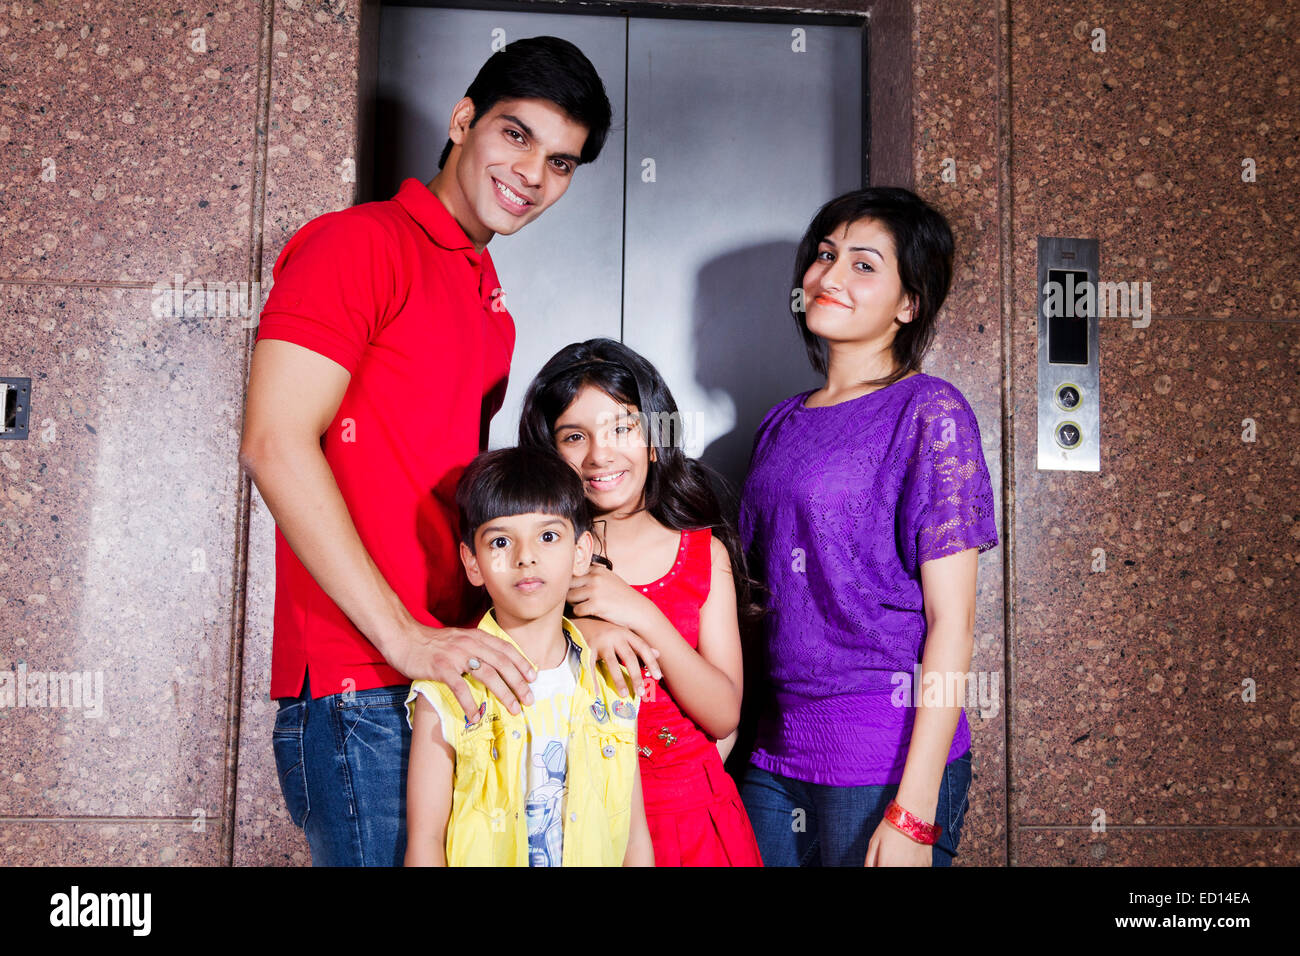 Los padres con niños indios elevación permanente Foto de stock